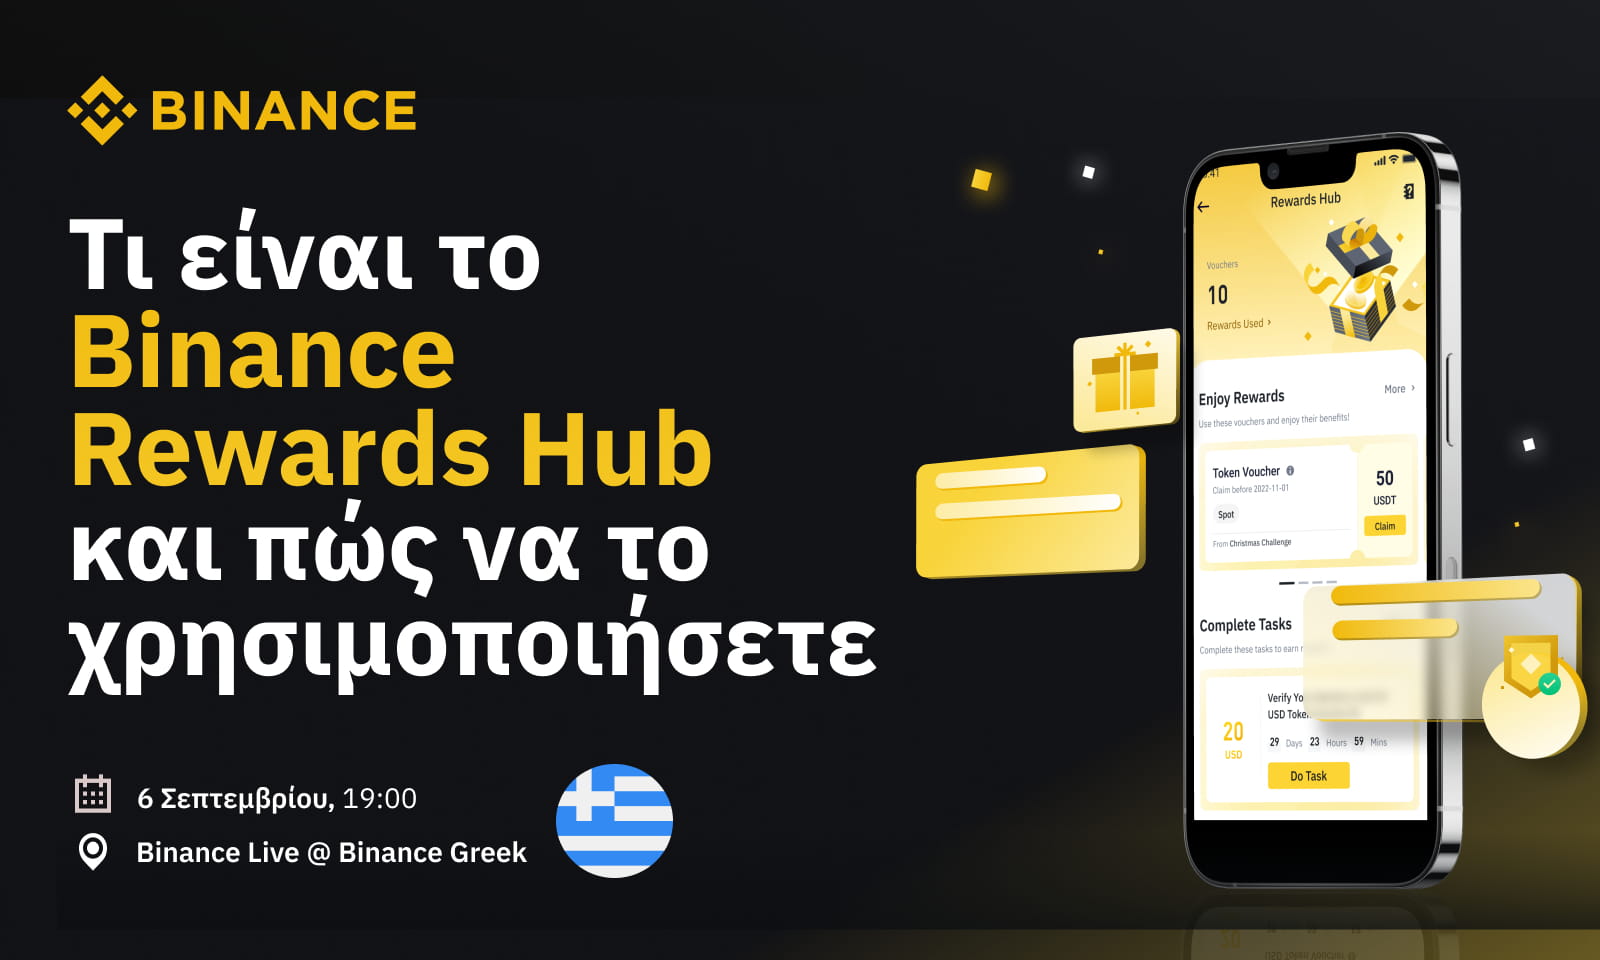 Τι είναι το Binance Rewards Hub και πώς να το χρησιμοποιήσετε